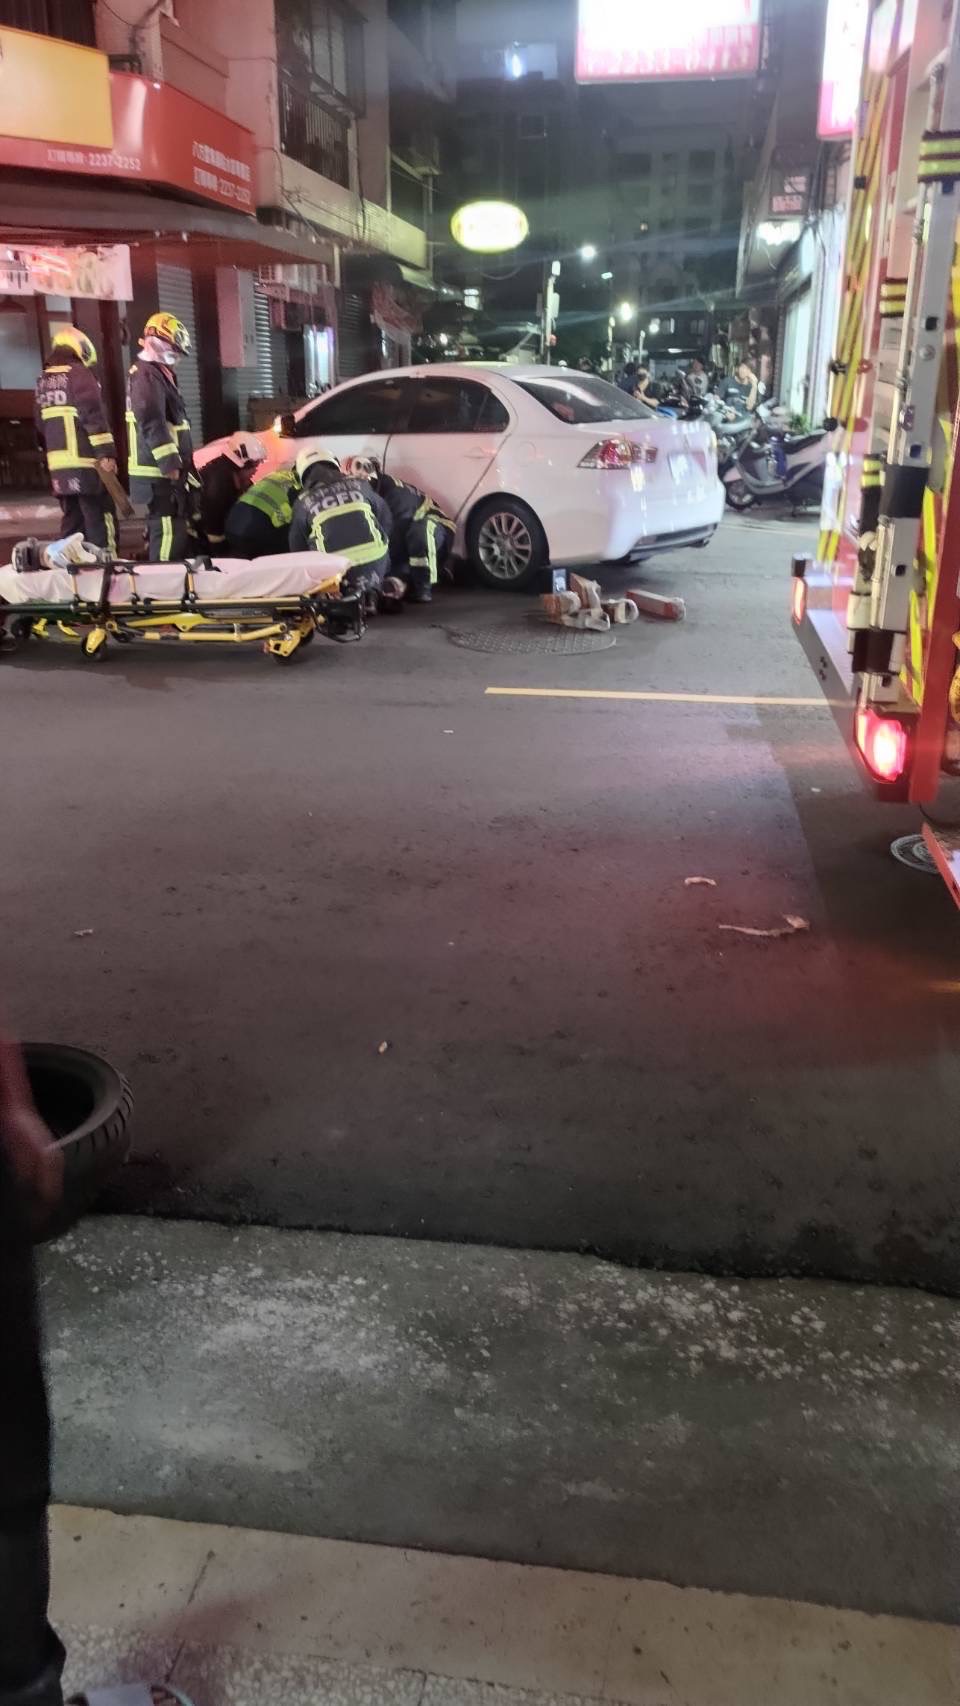 台中市北区梅亭东街在今晚7时许传出车祸，一名七旬妇人卡在车底，警消抢救中。图／读者提供